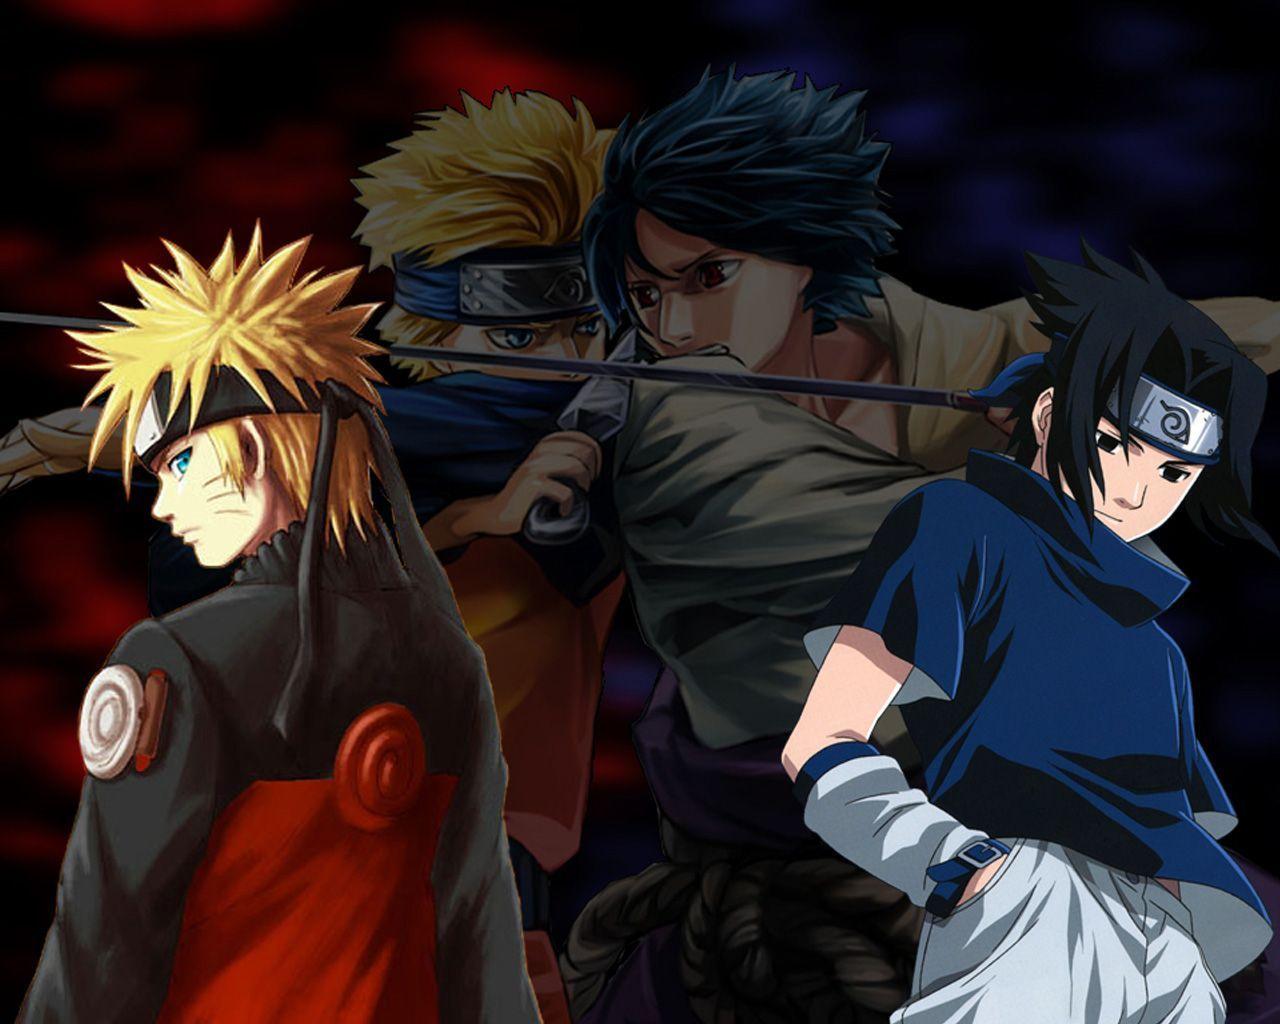 Naruto vs Sasuke Naruto Anime Wallpaper. hdwallpaper